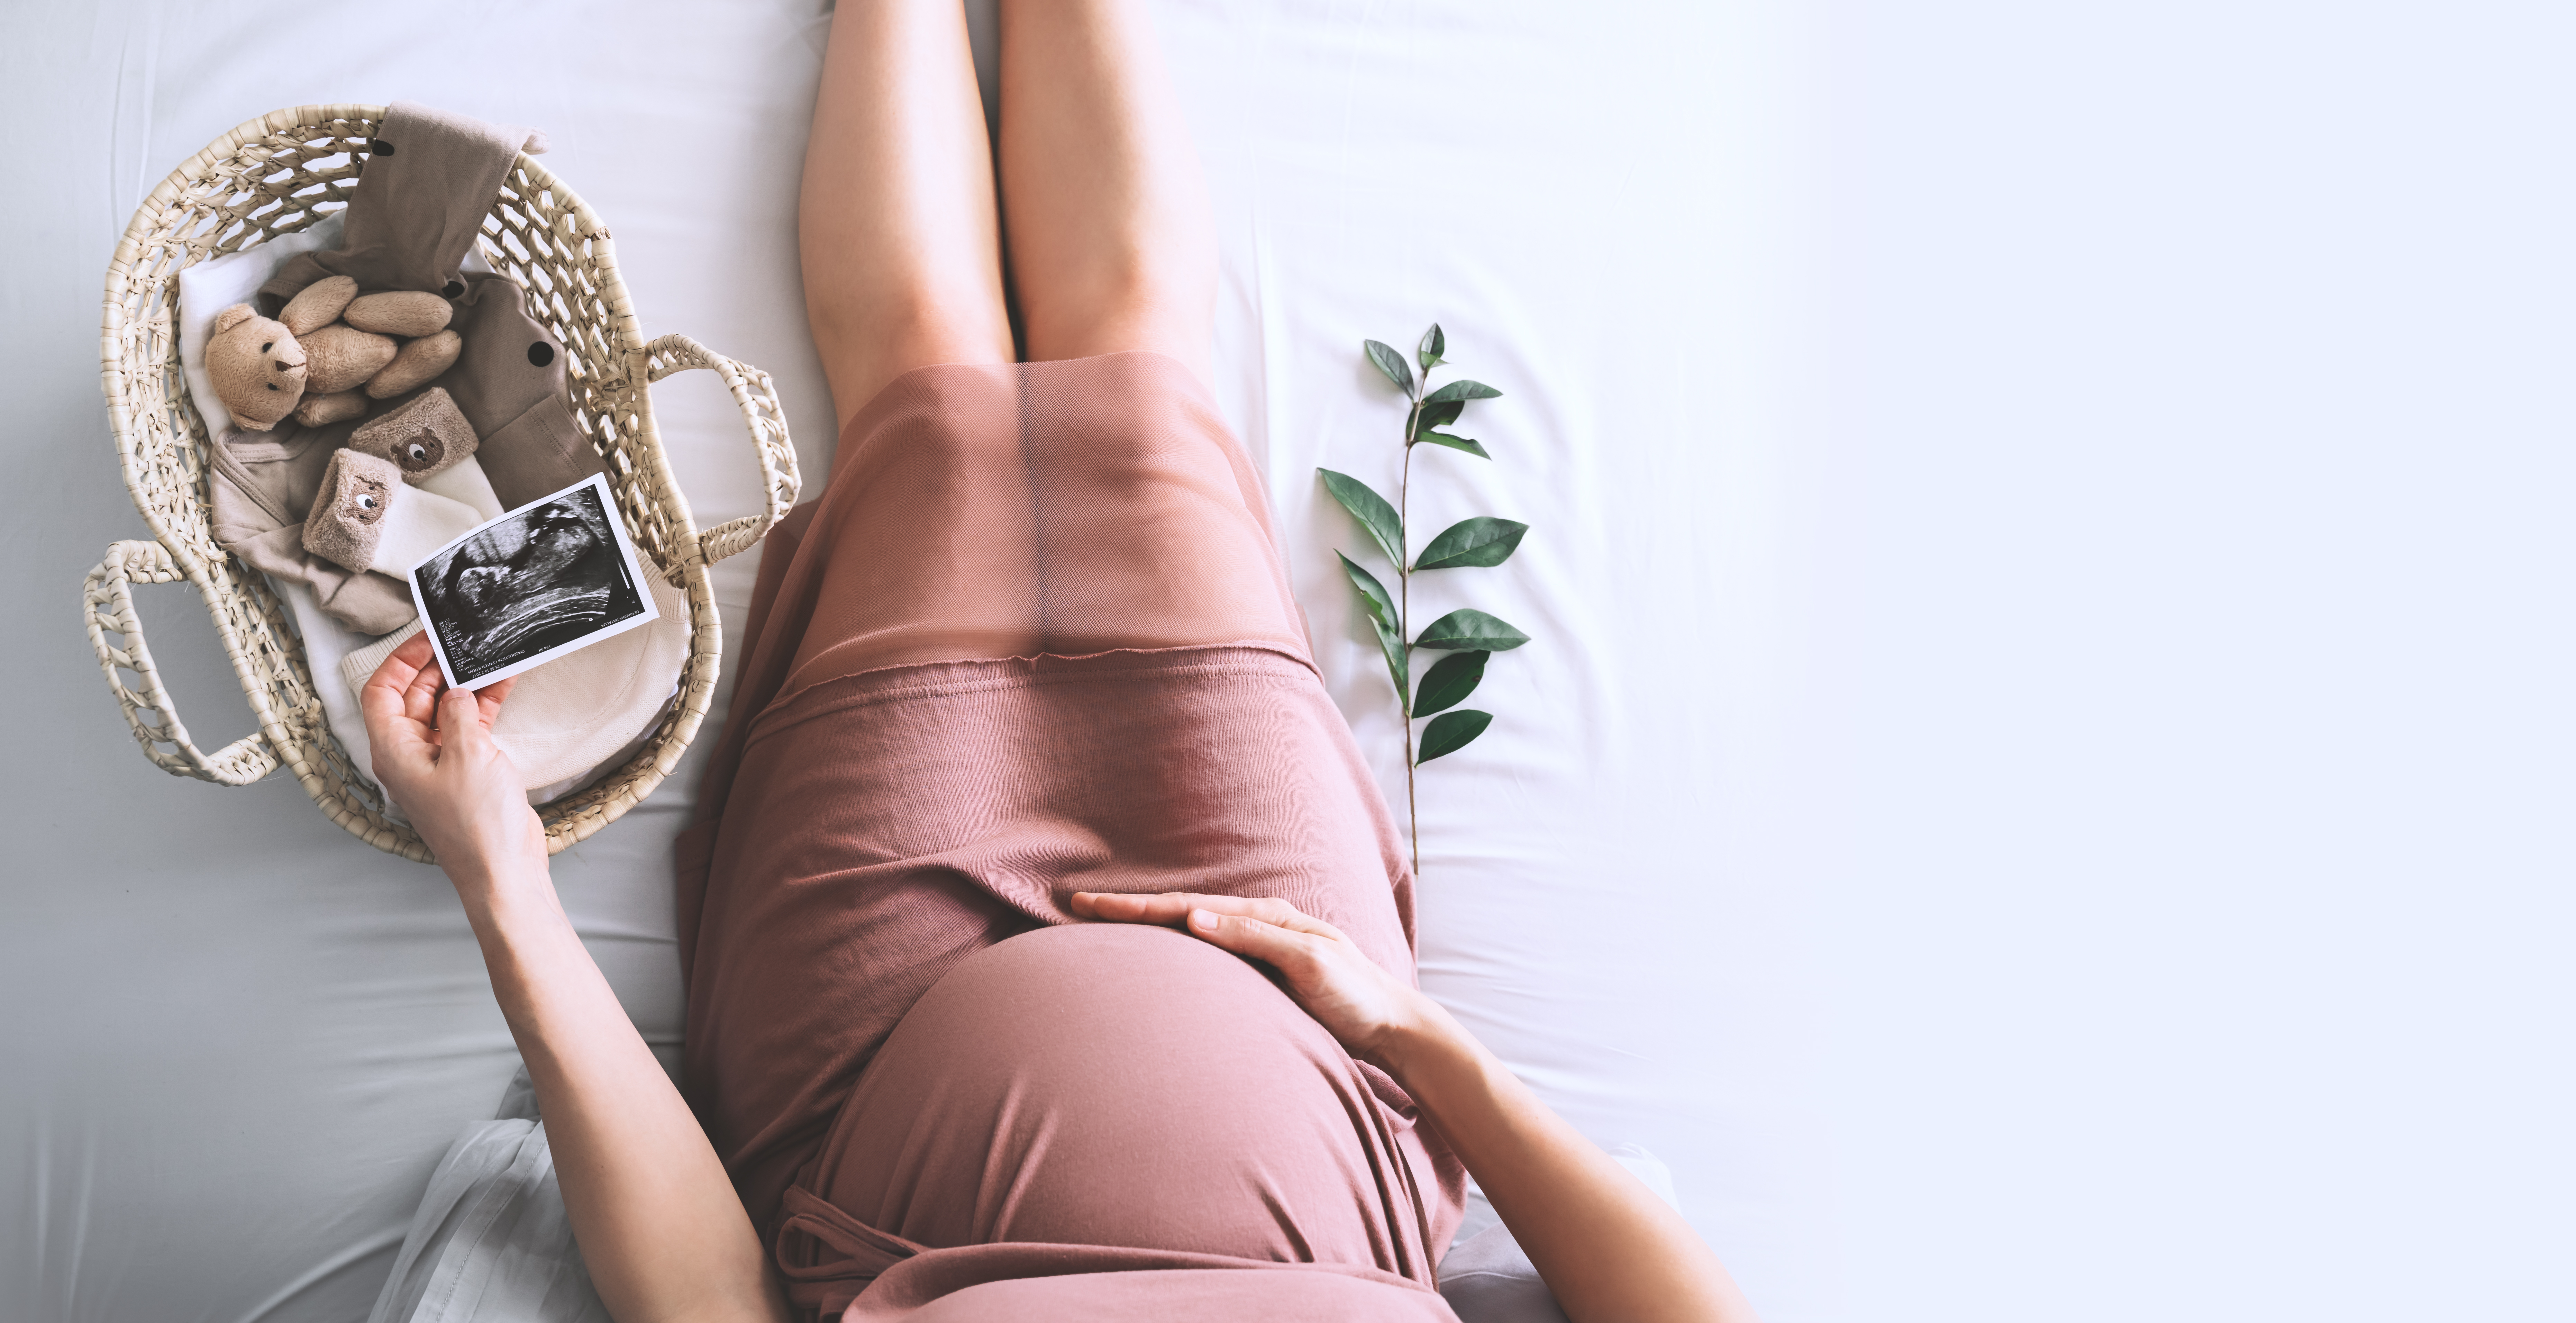 Eine Frau hält einen Scan ihres Babys in der einen und ihren schwangeren Bauch in der anderen Hand neben einem Korb mit Babyzubehör | Quelle: Shutterstock